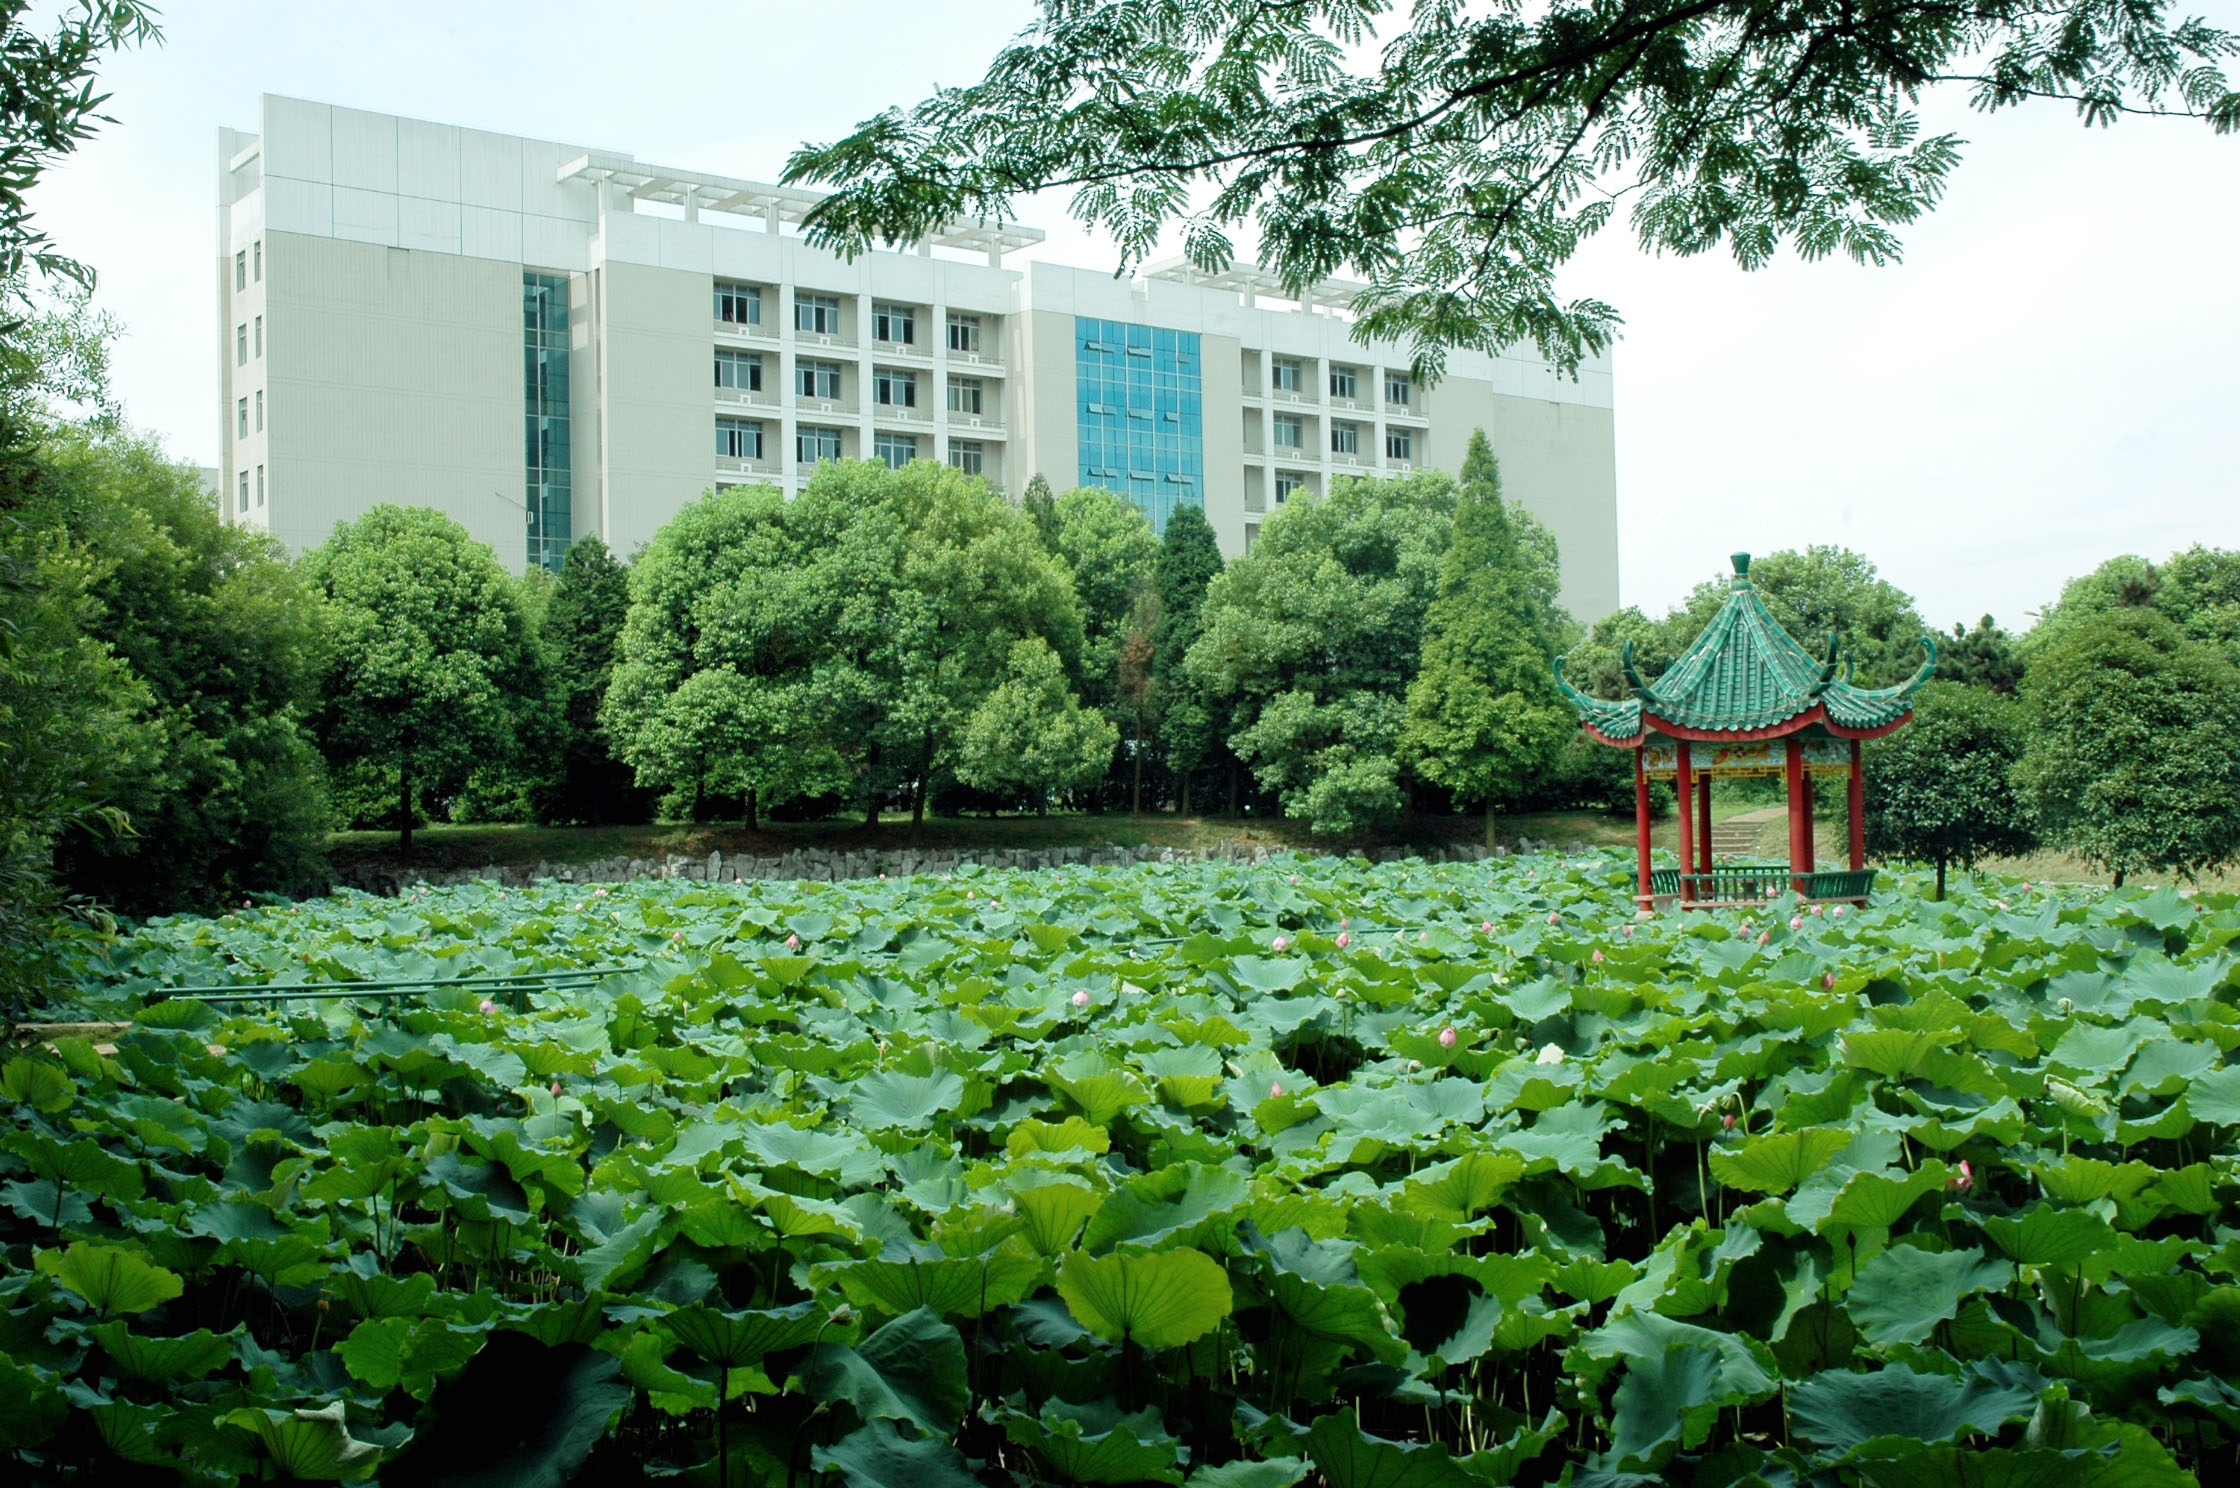 湖南科技学院校园风景图片